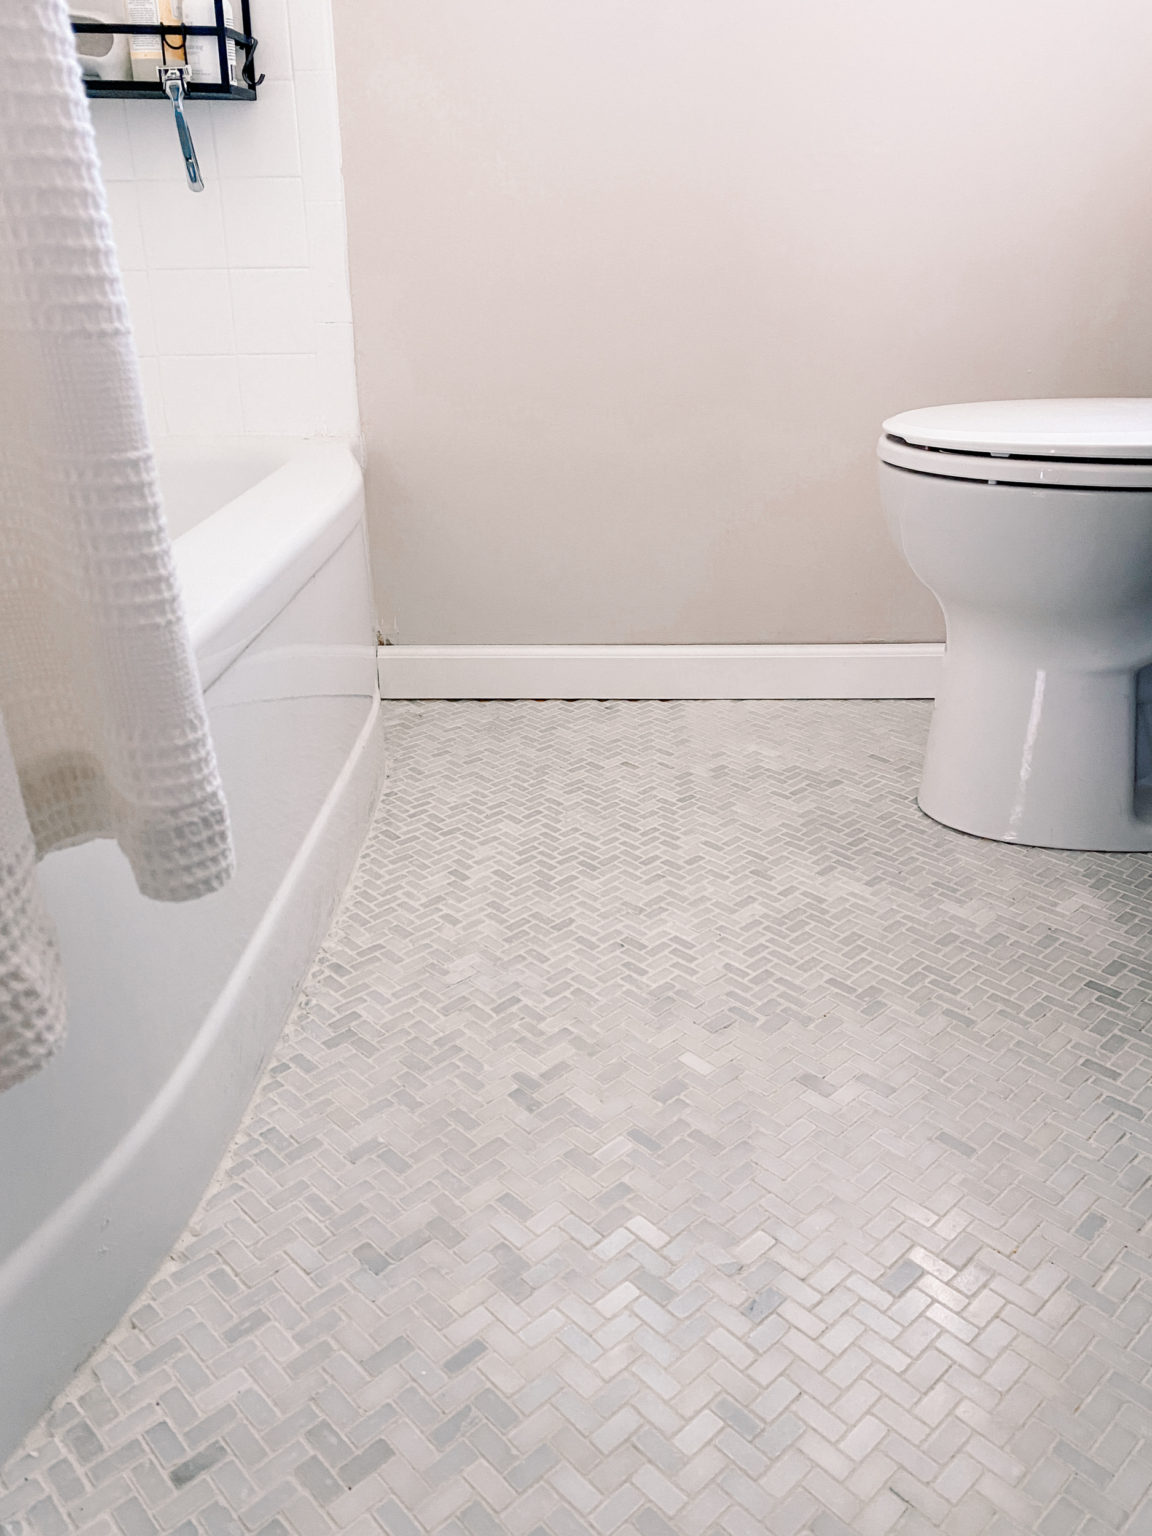 herringbone floor tile bathroom